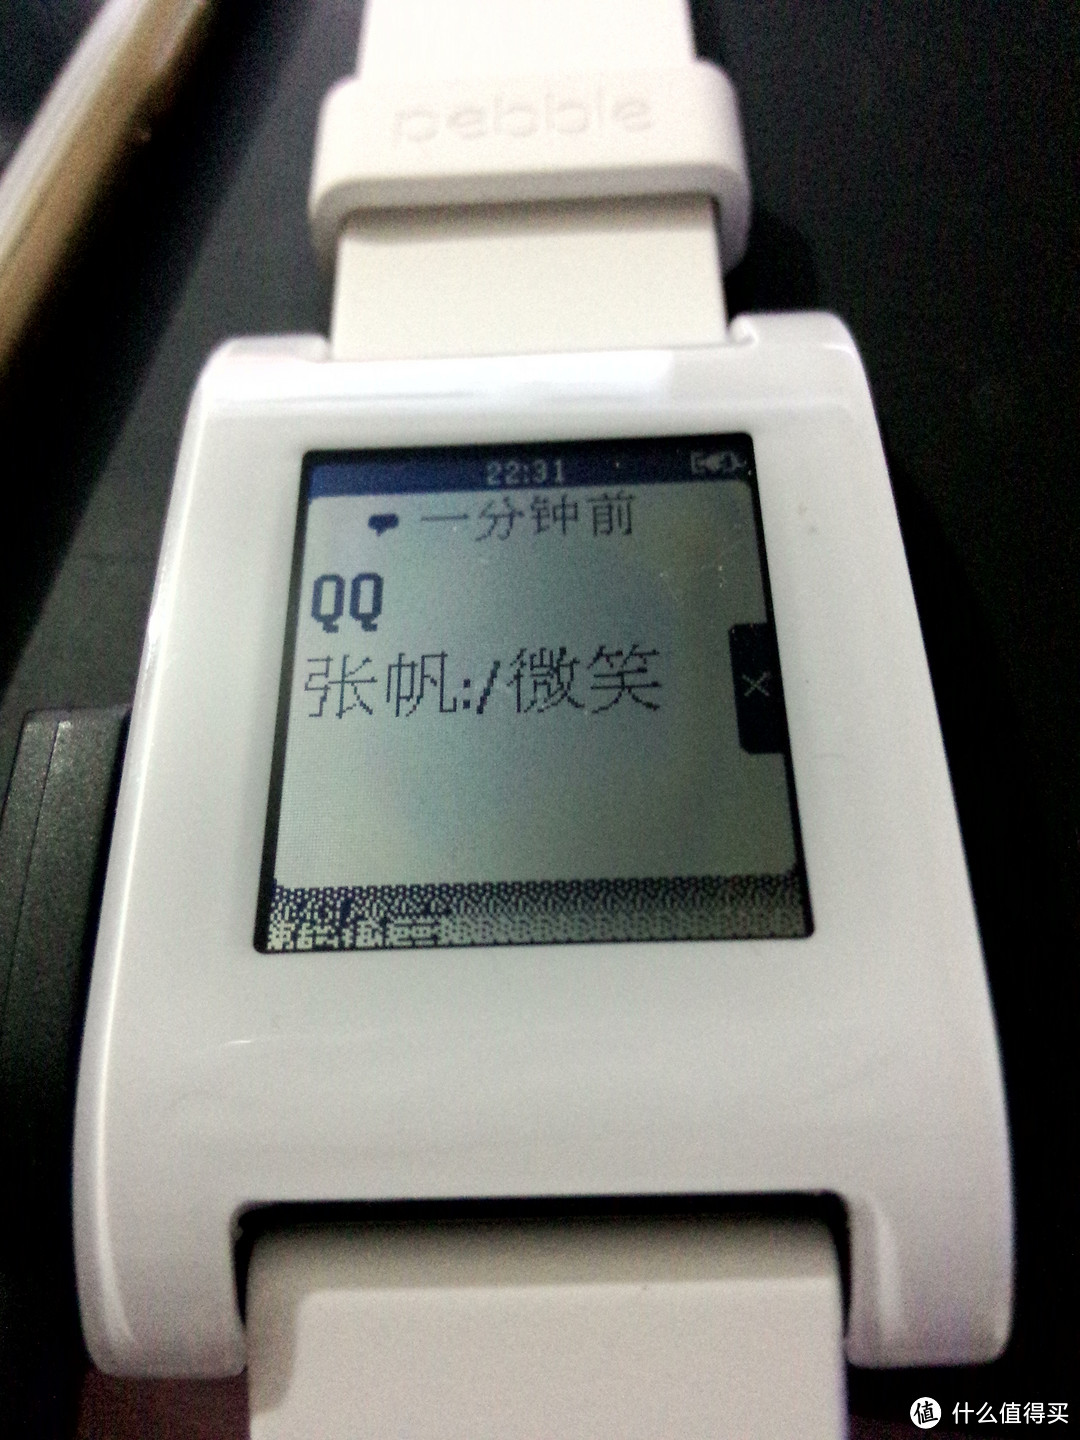 Pebble 智能手表官方更换解决中文固件问题附使用感受